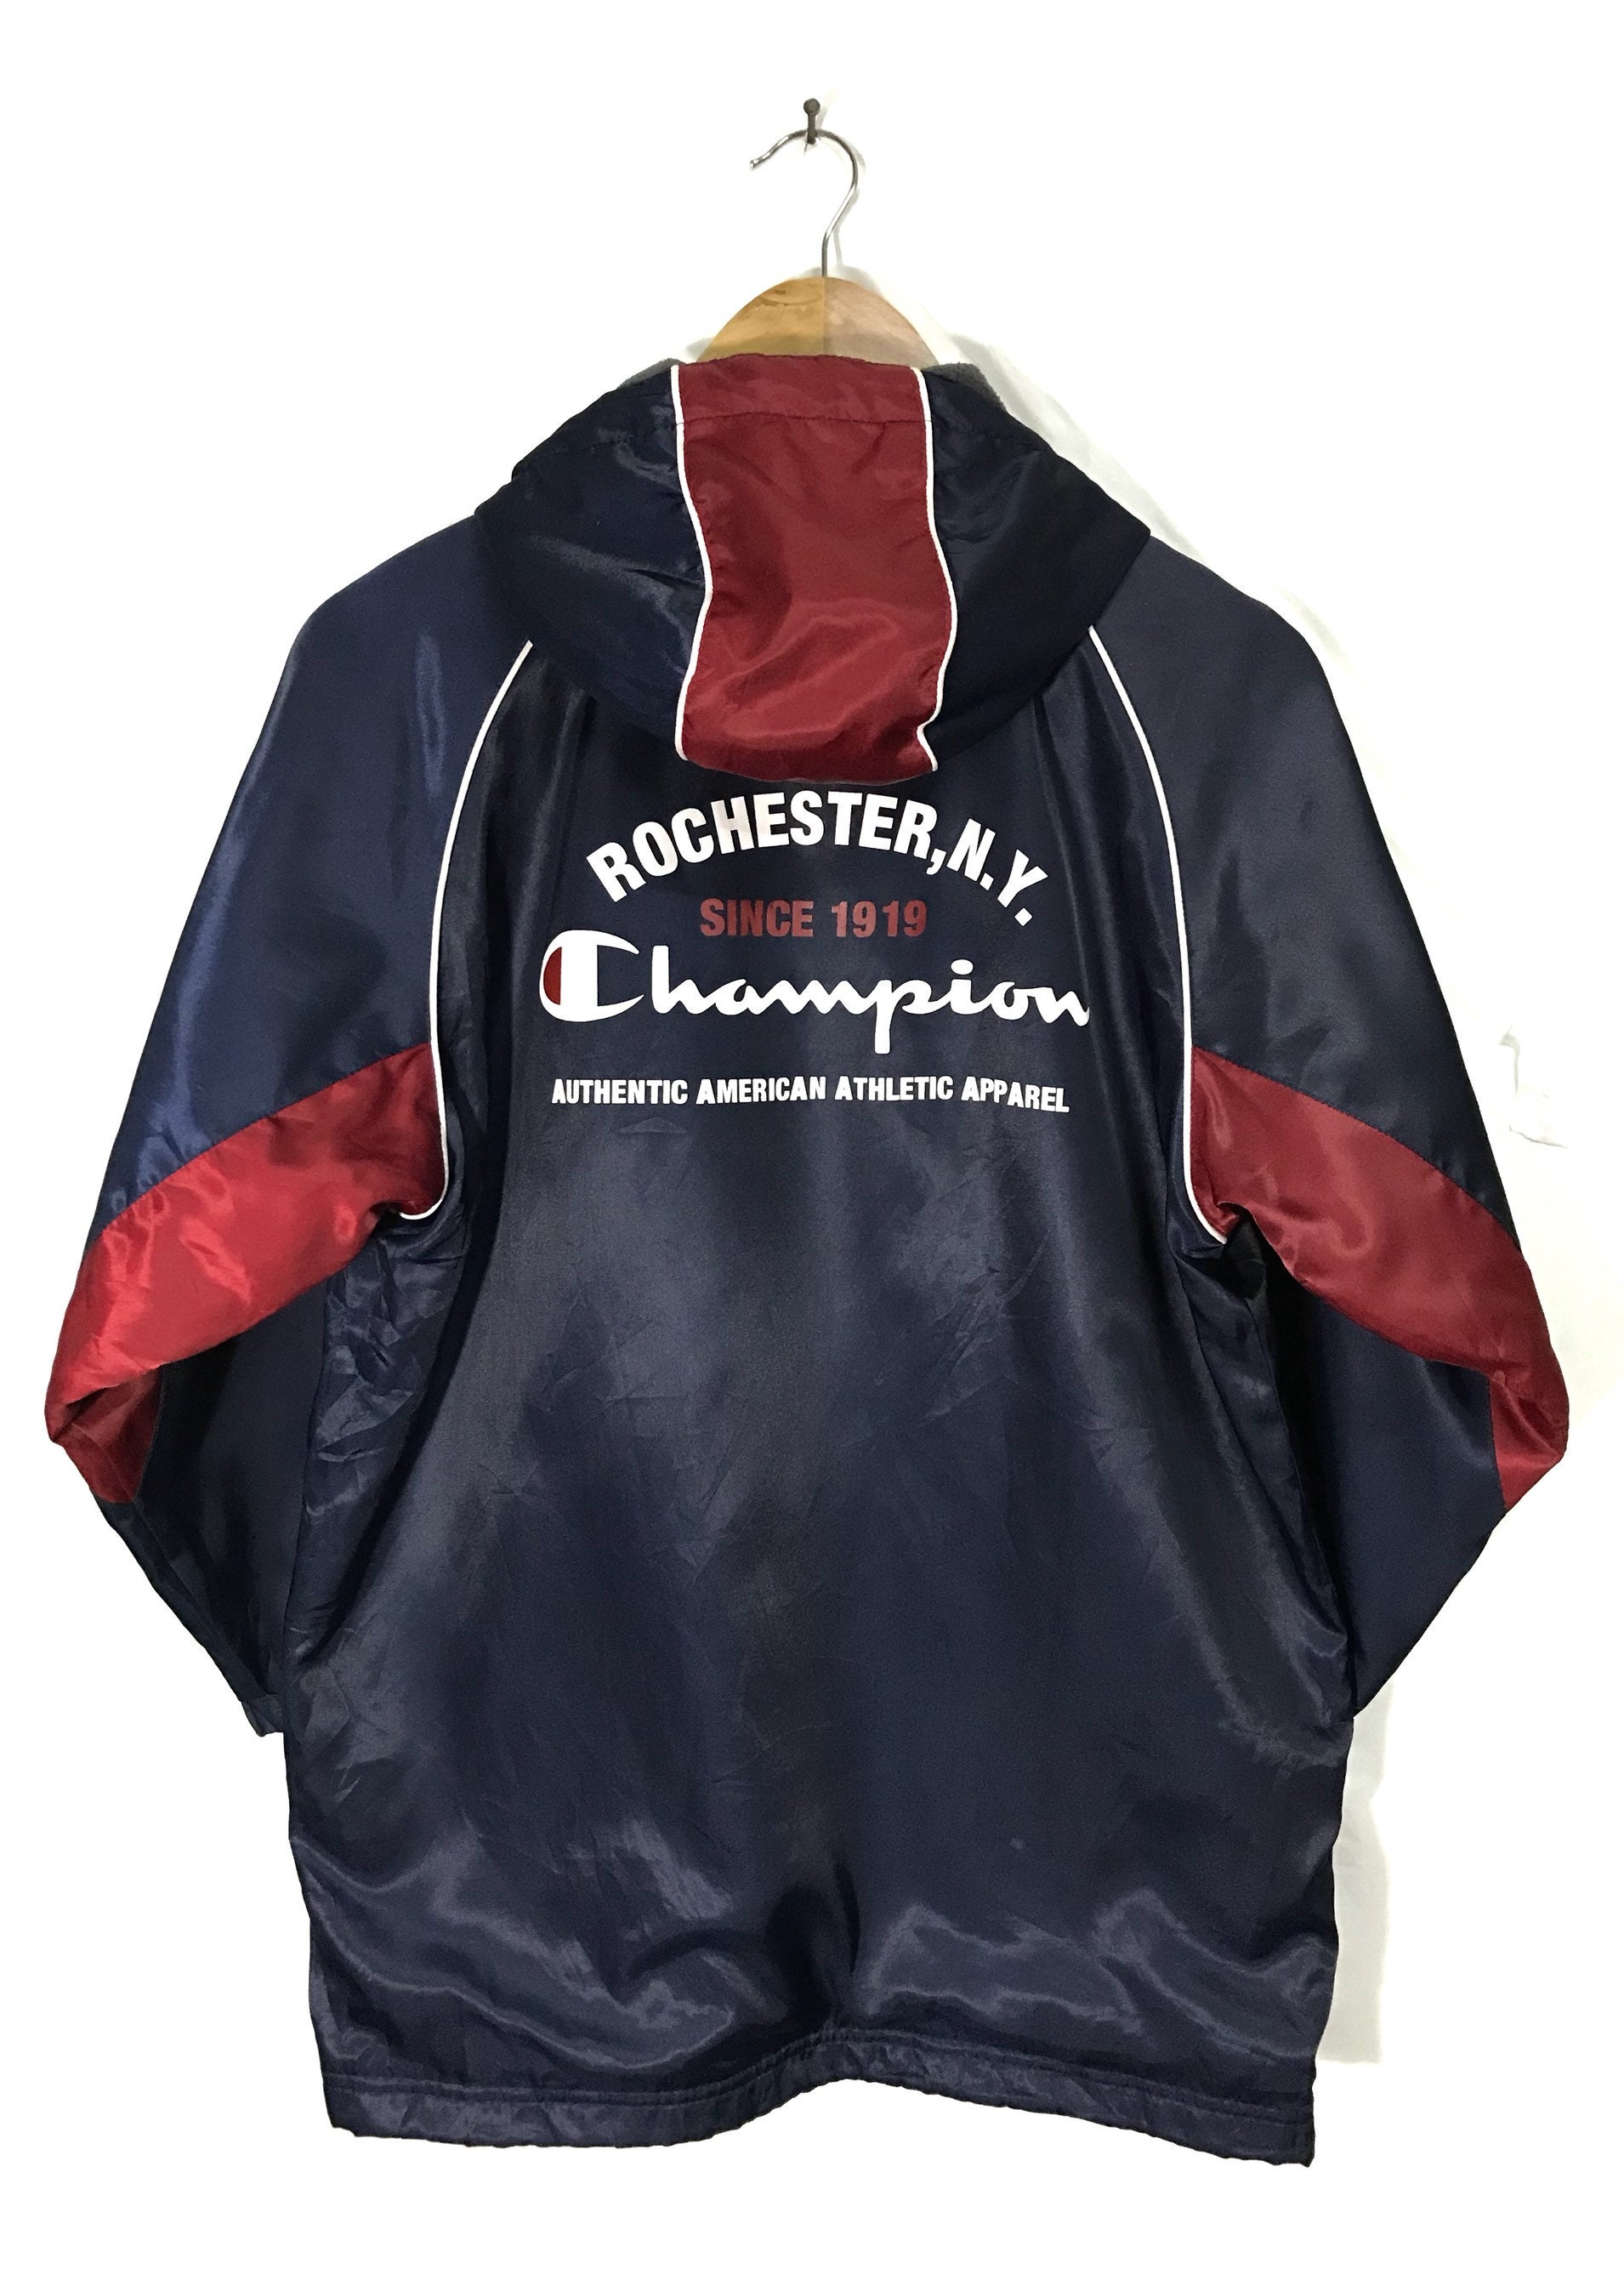 Buy Vintage Rochester N.Y Windbreaker Hoodies Online India - Etsy